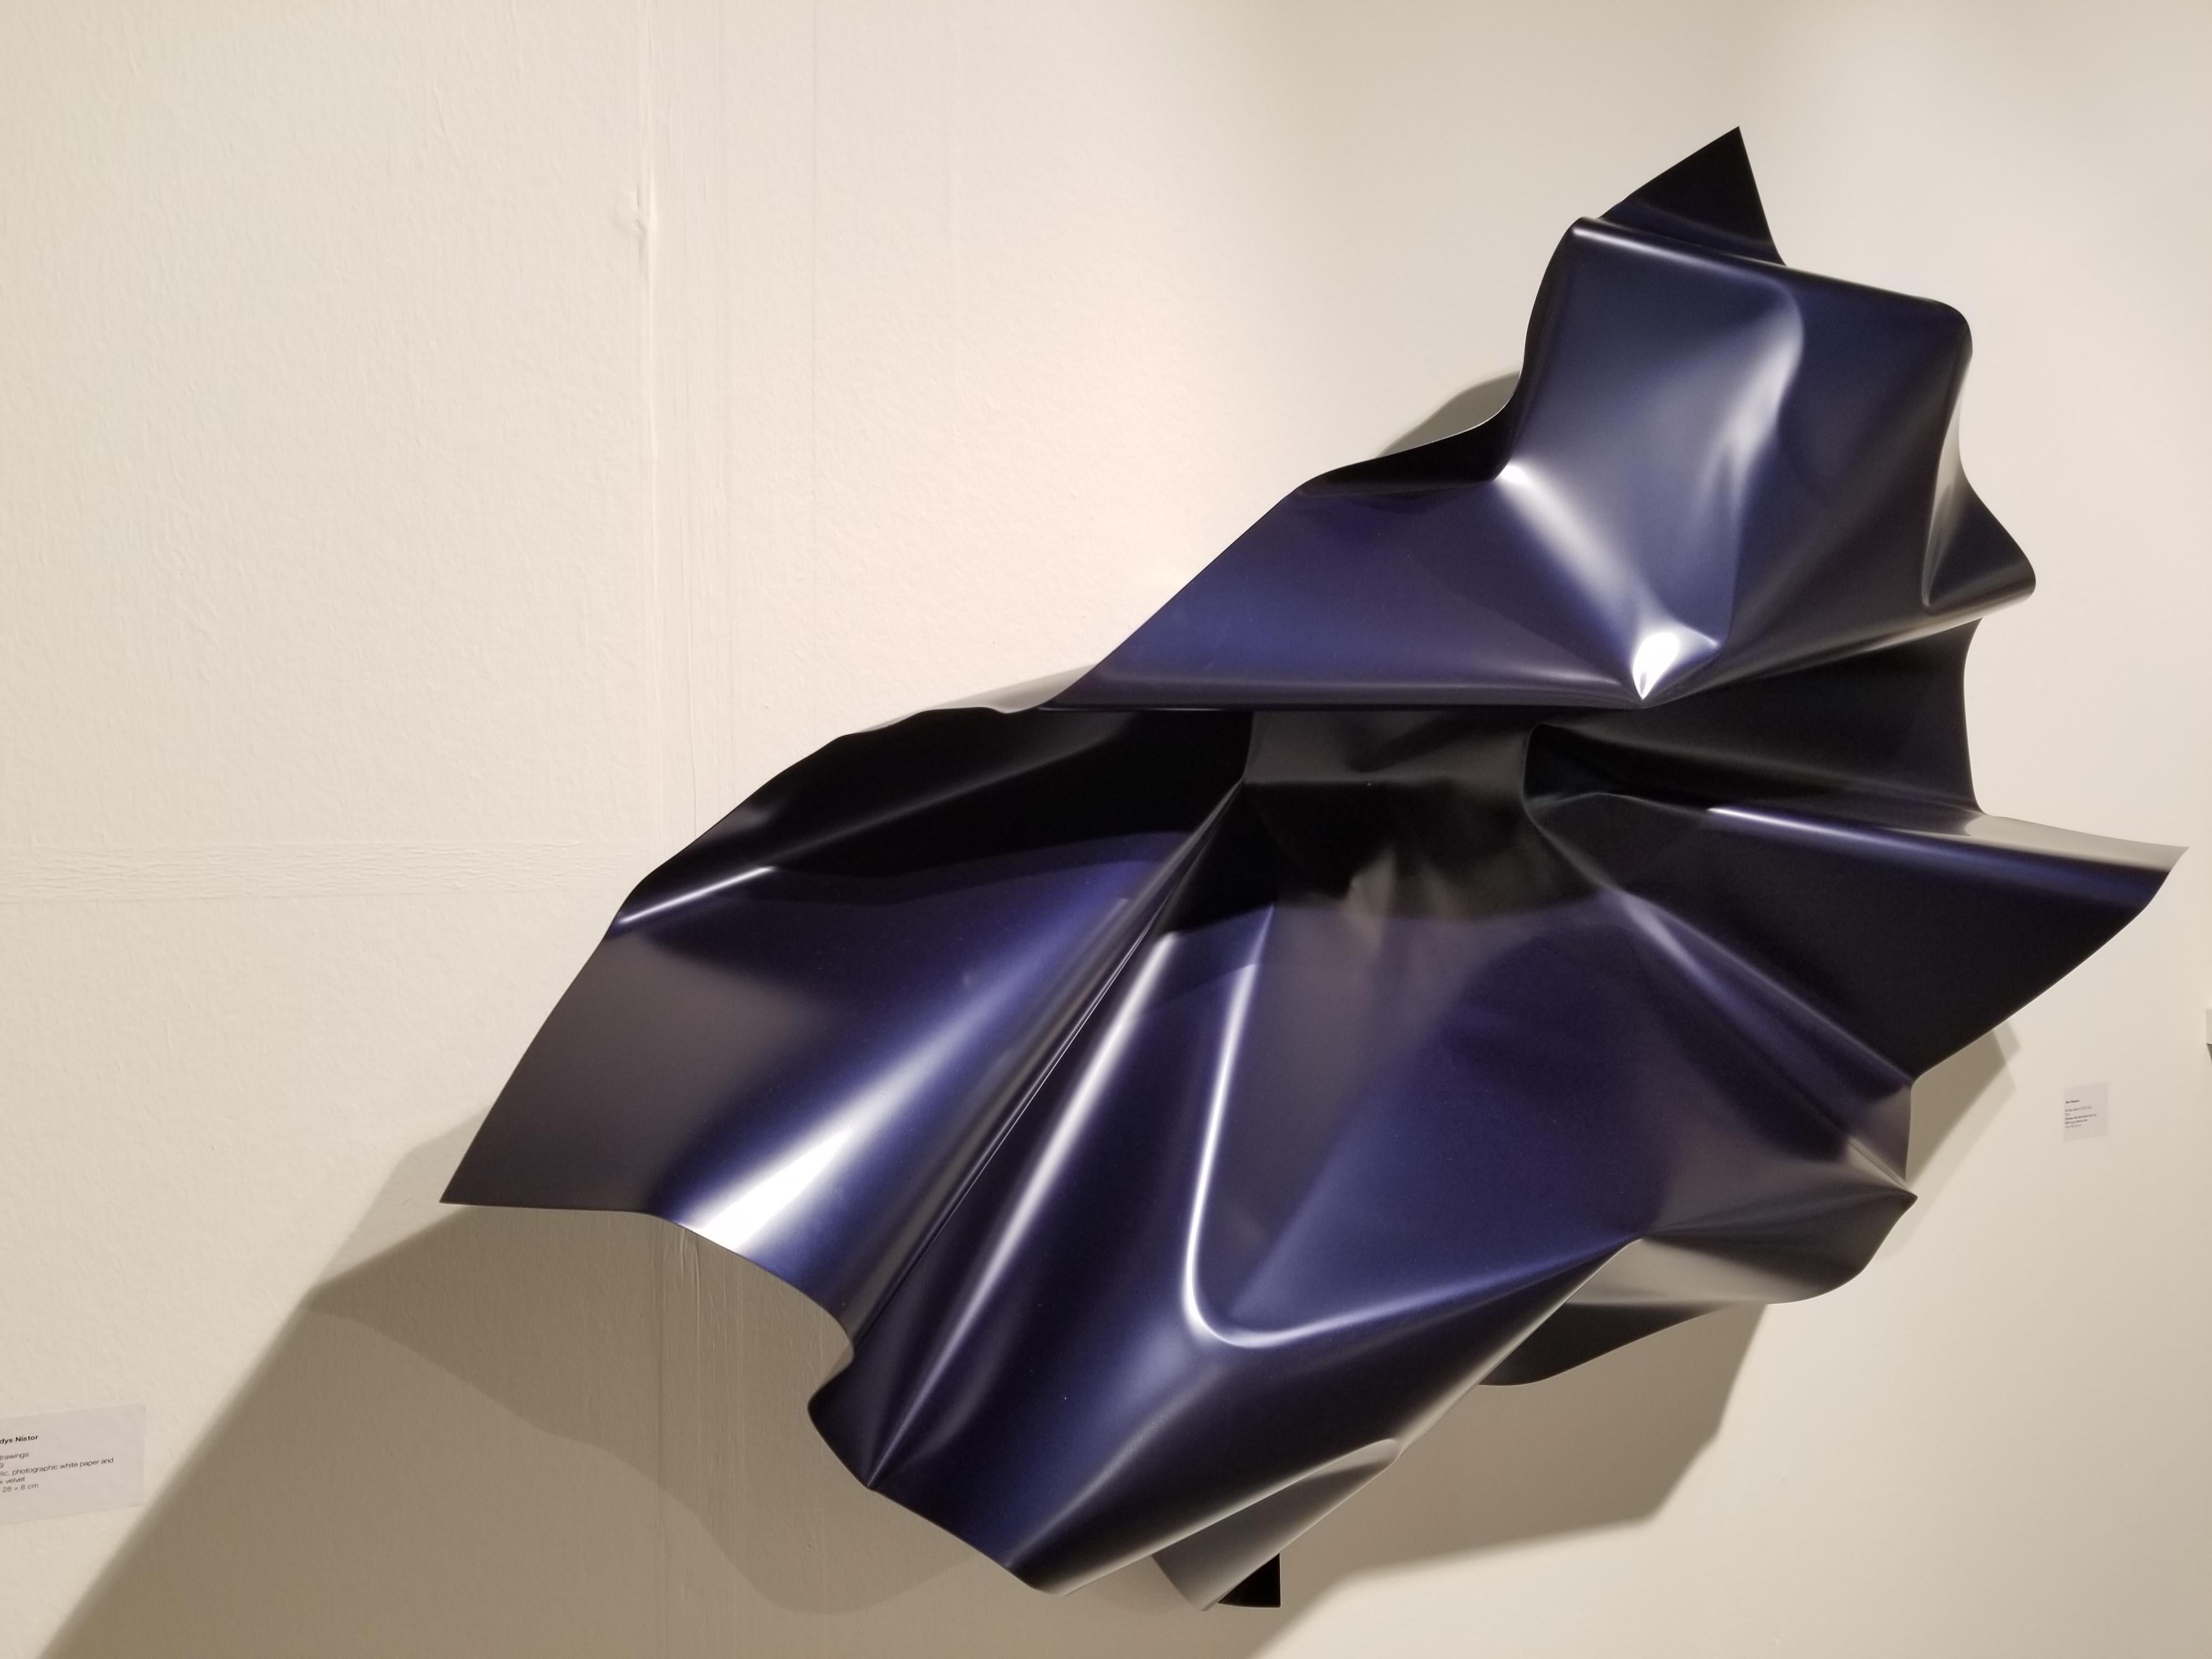 Mx Blue, March 6, 2019 13:29, 2019 - Sculpture by Aldo Chaparro